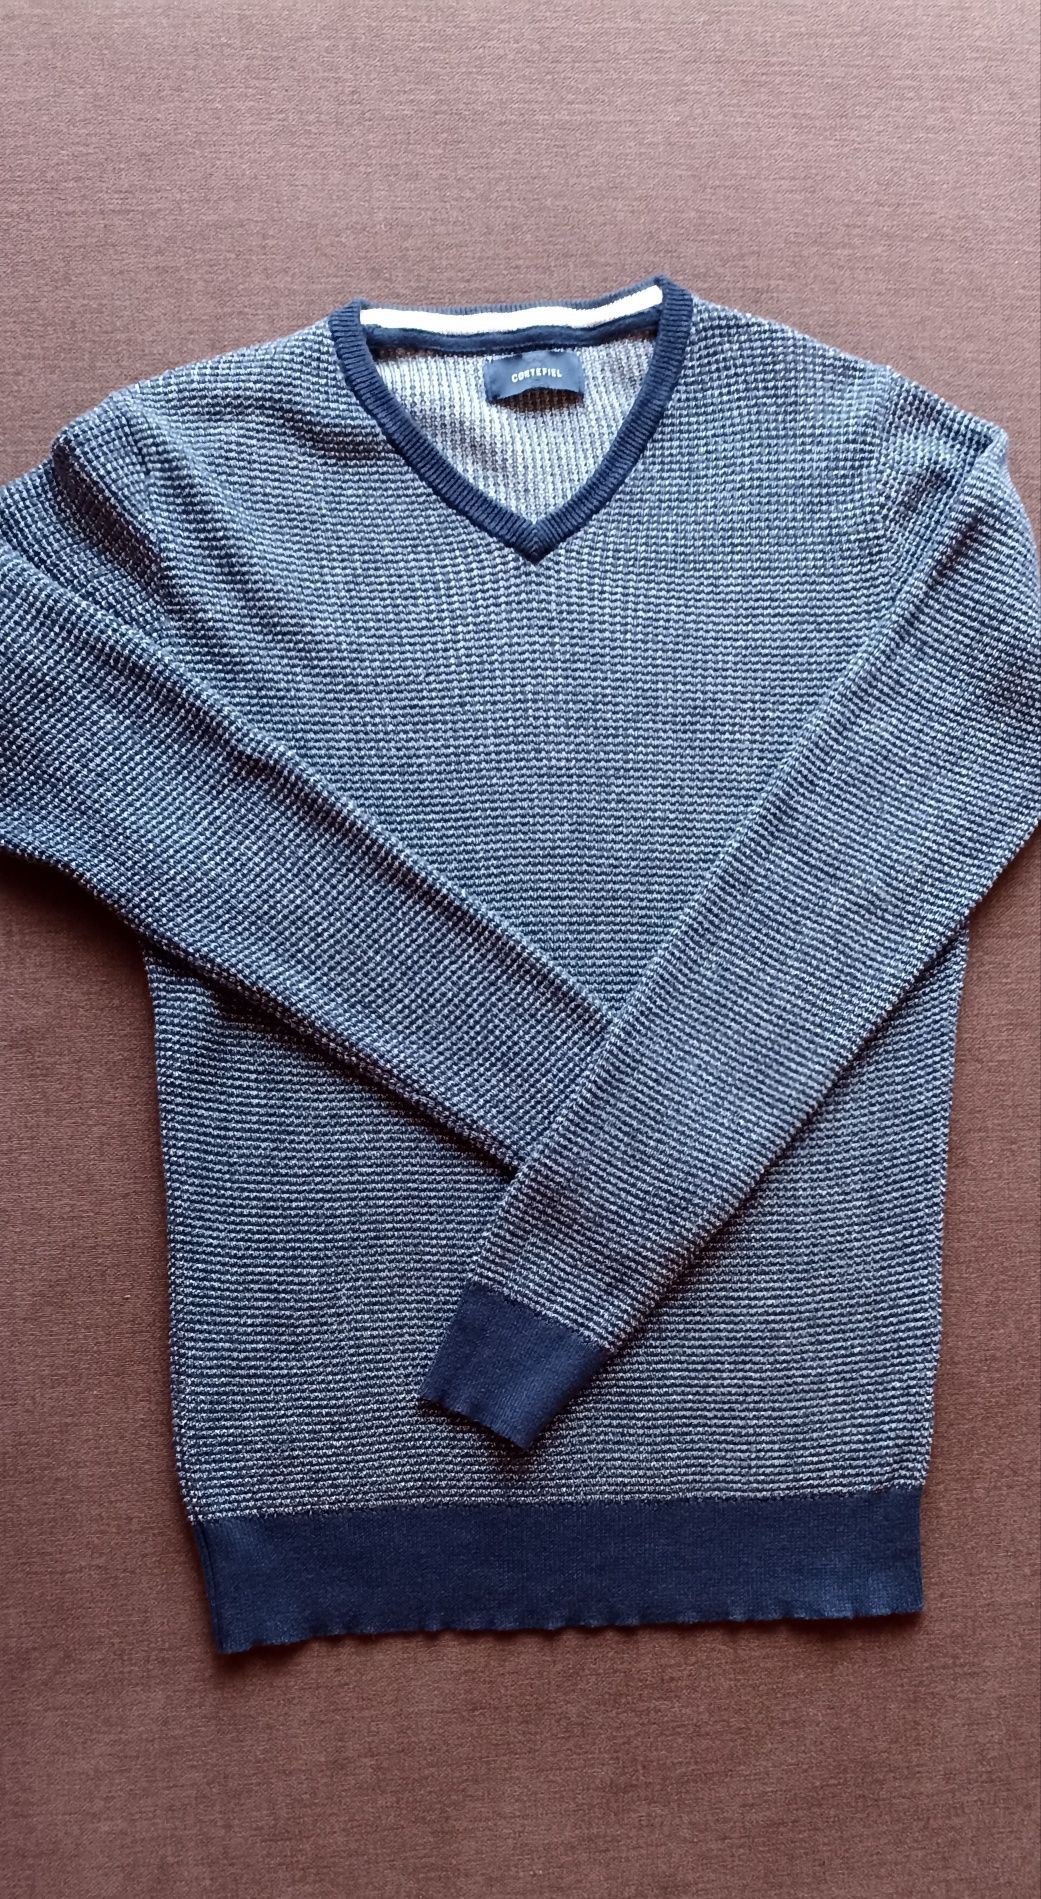 Sweterek męski /młodzieżowy dopasowany fason